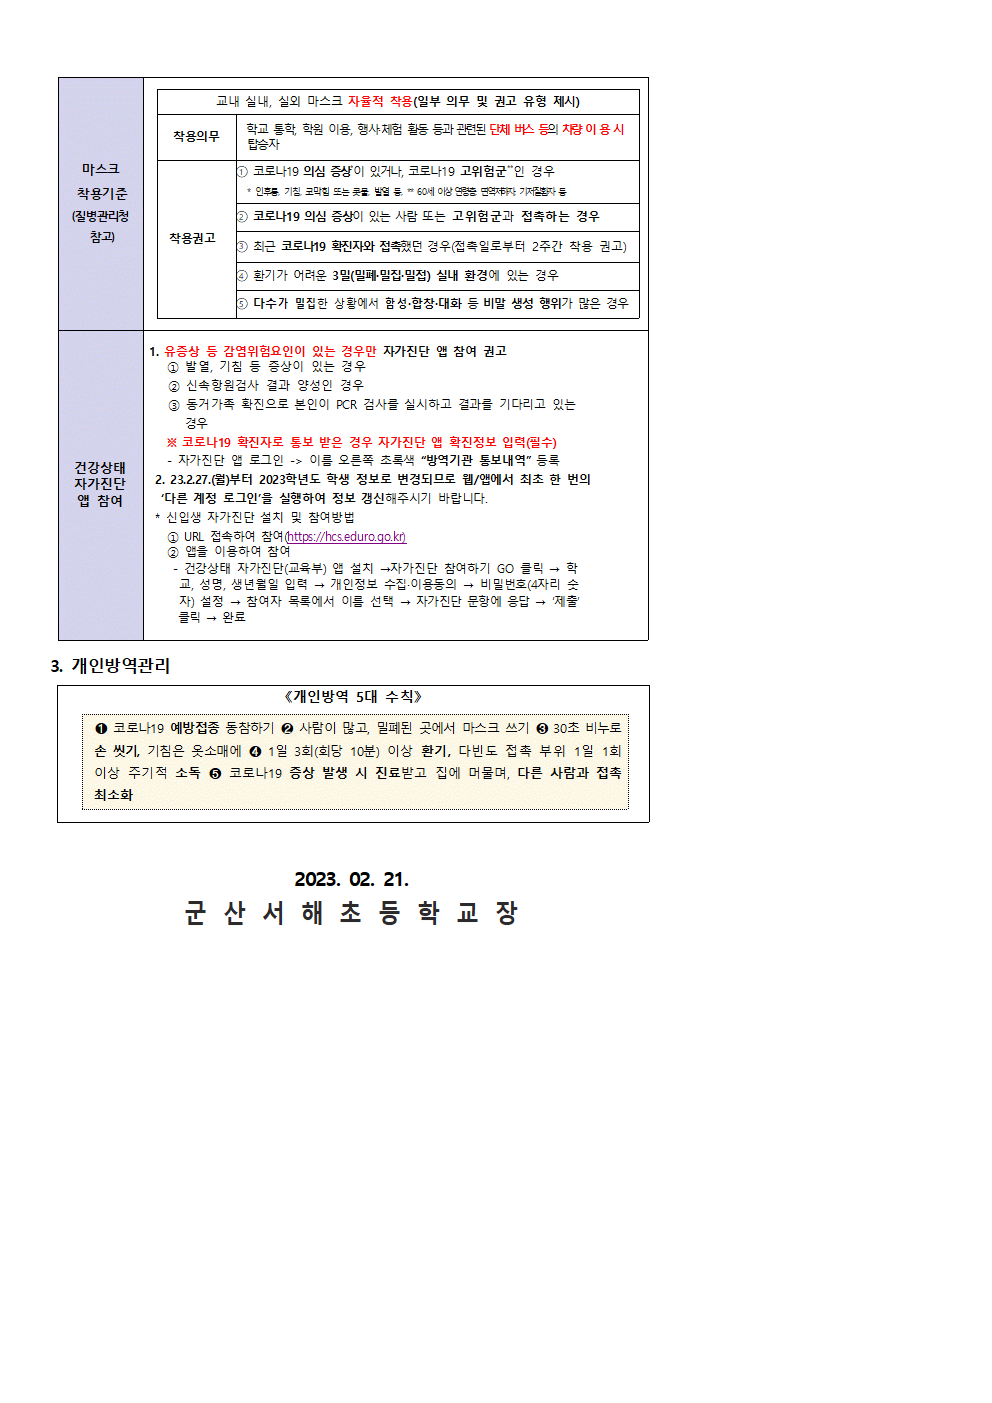 코로나19 학교 방역 기본대책 개정내용 안내 - 복사본 (3)001